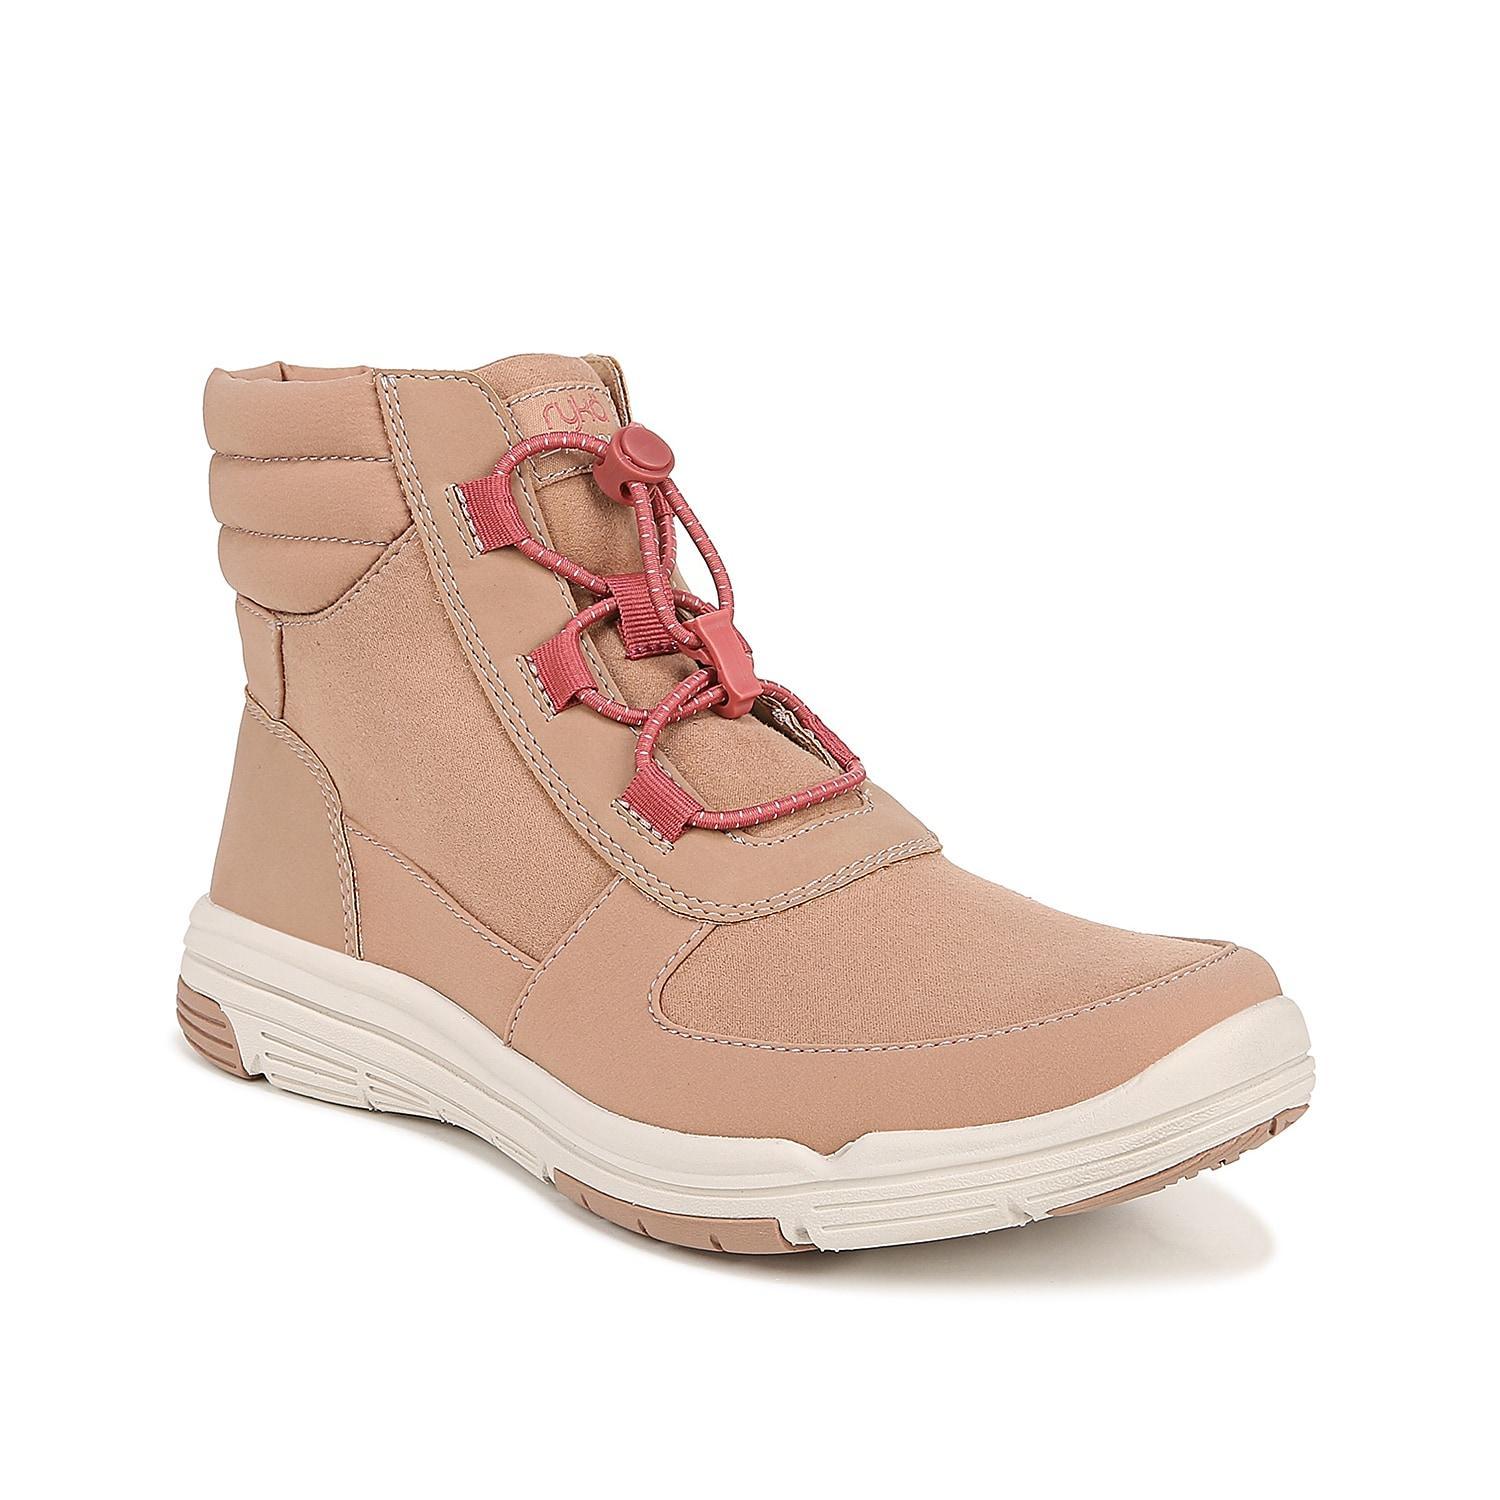 Ryka Amanda Women's Boots Product Image